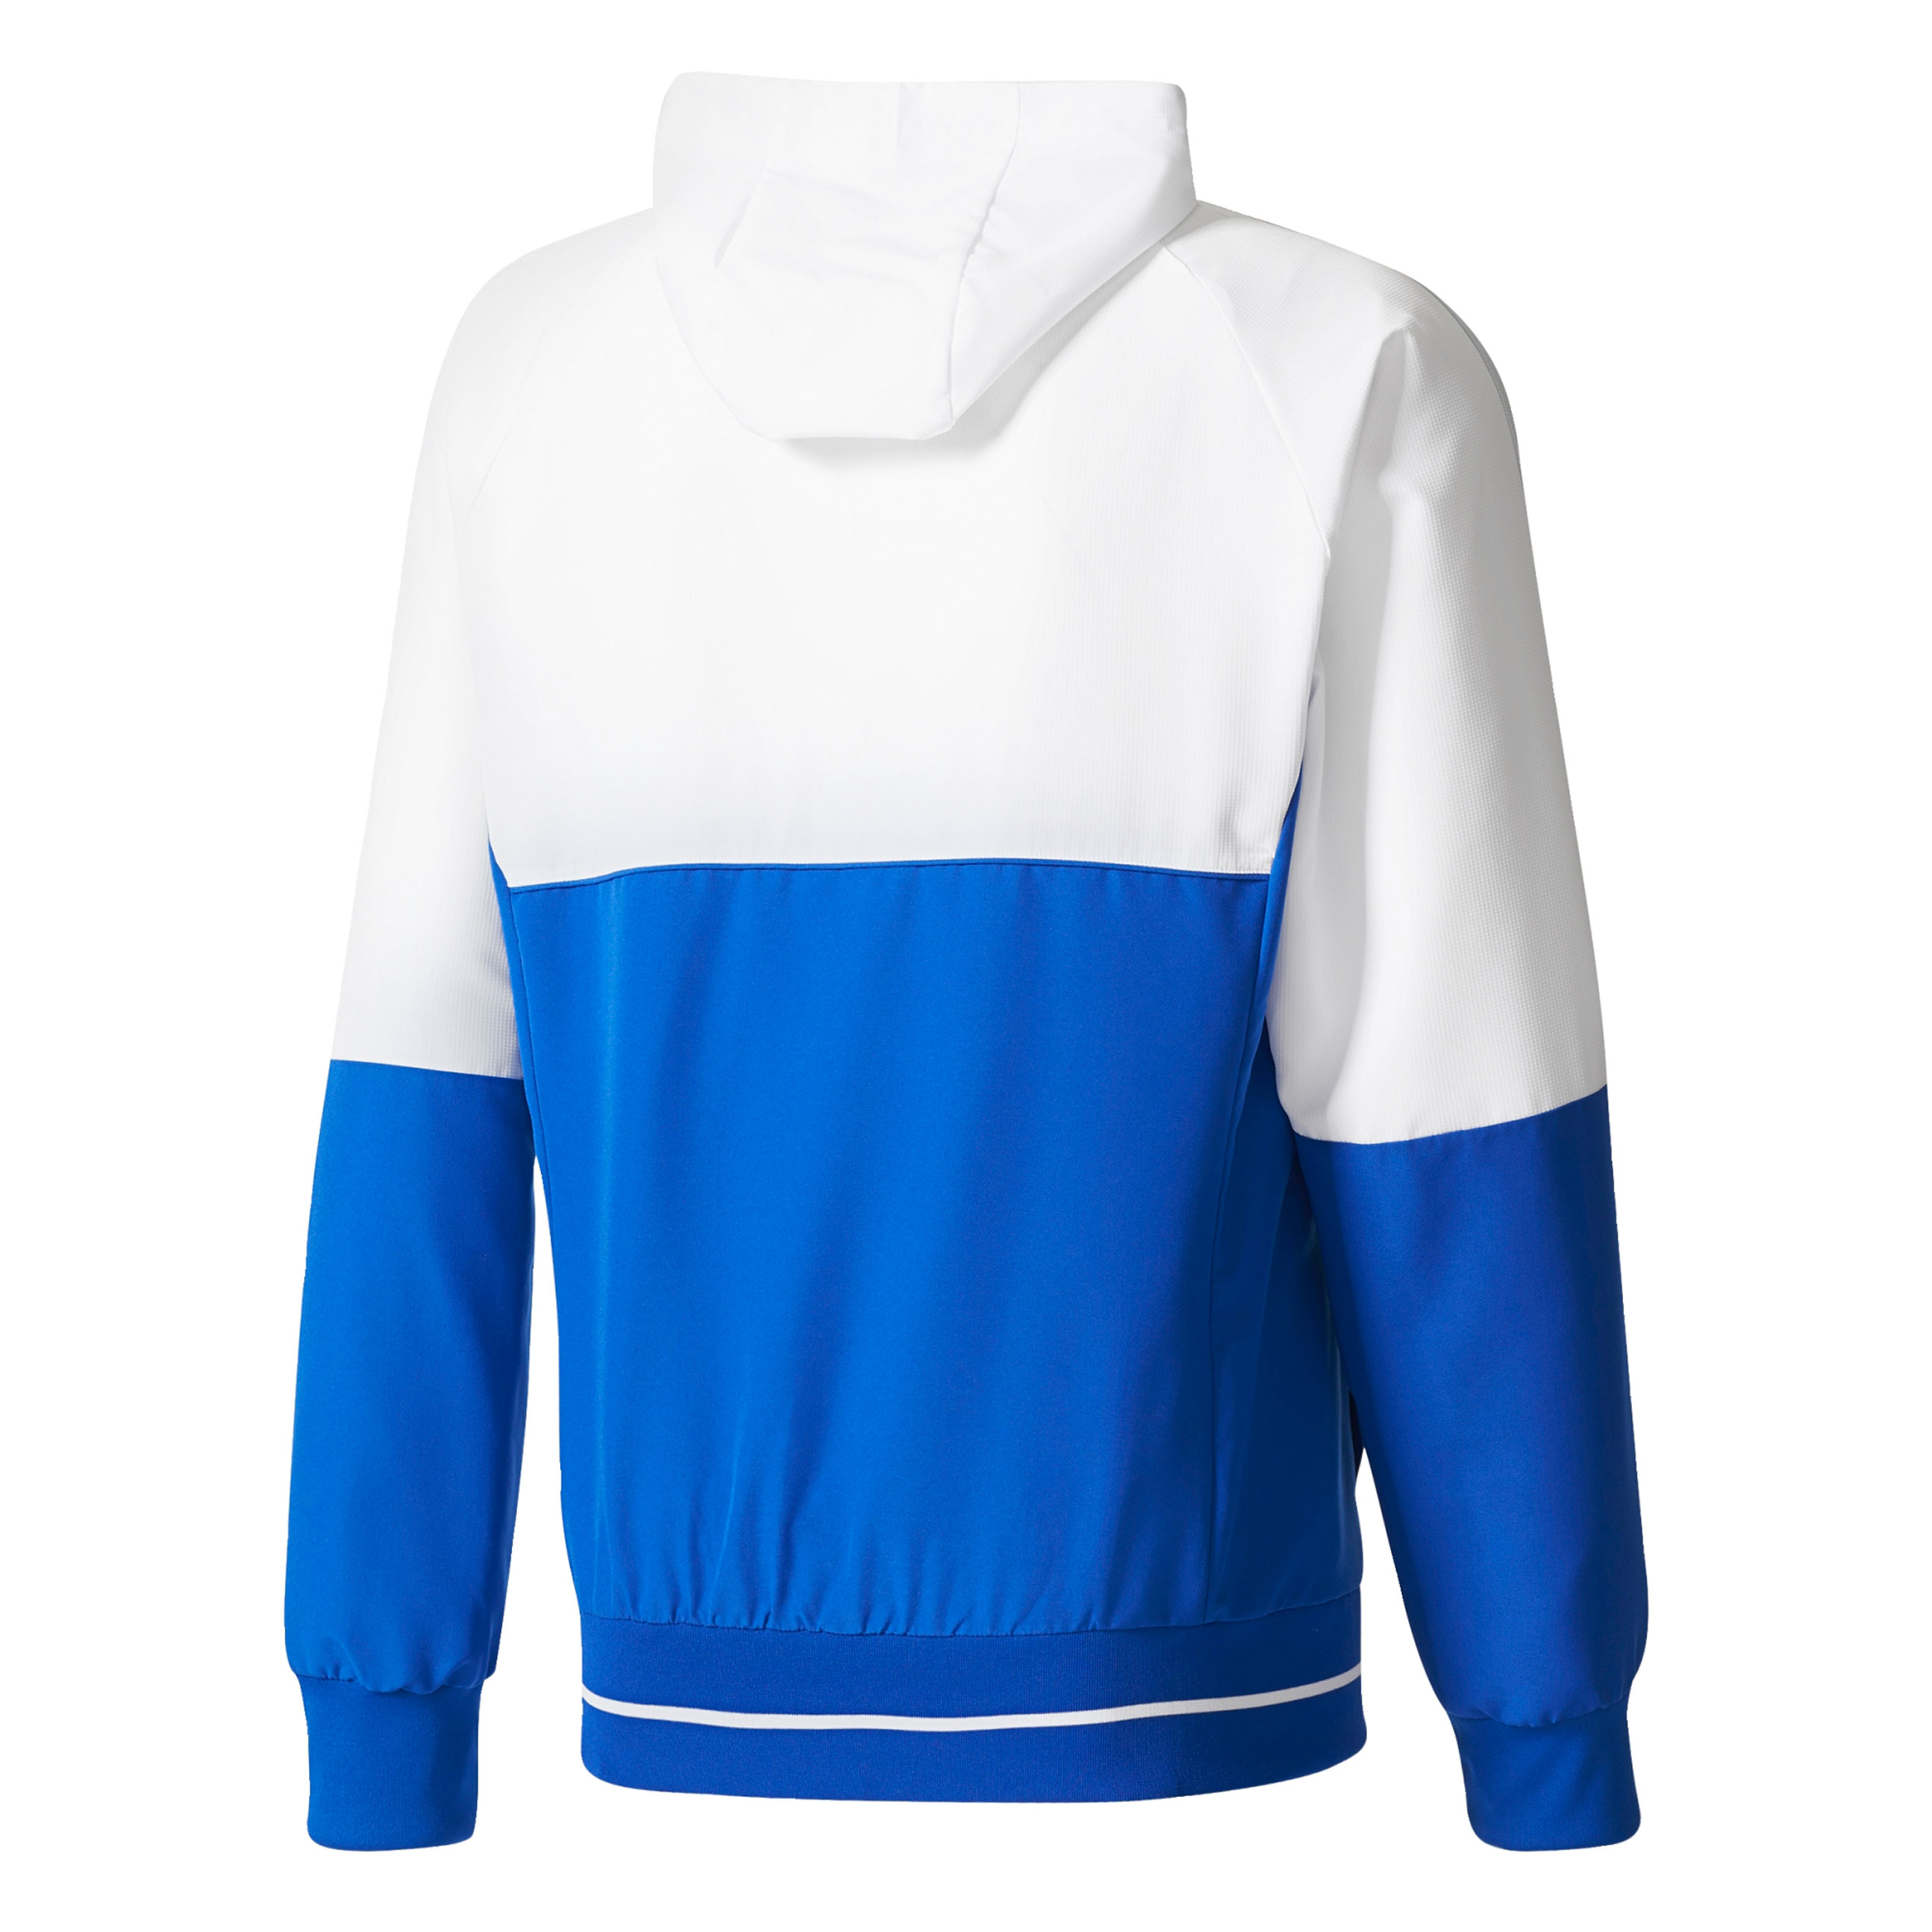 Adidas Schalke 04 Training Presentation Jacket - Royal Blue / White ...